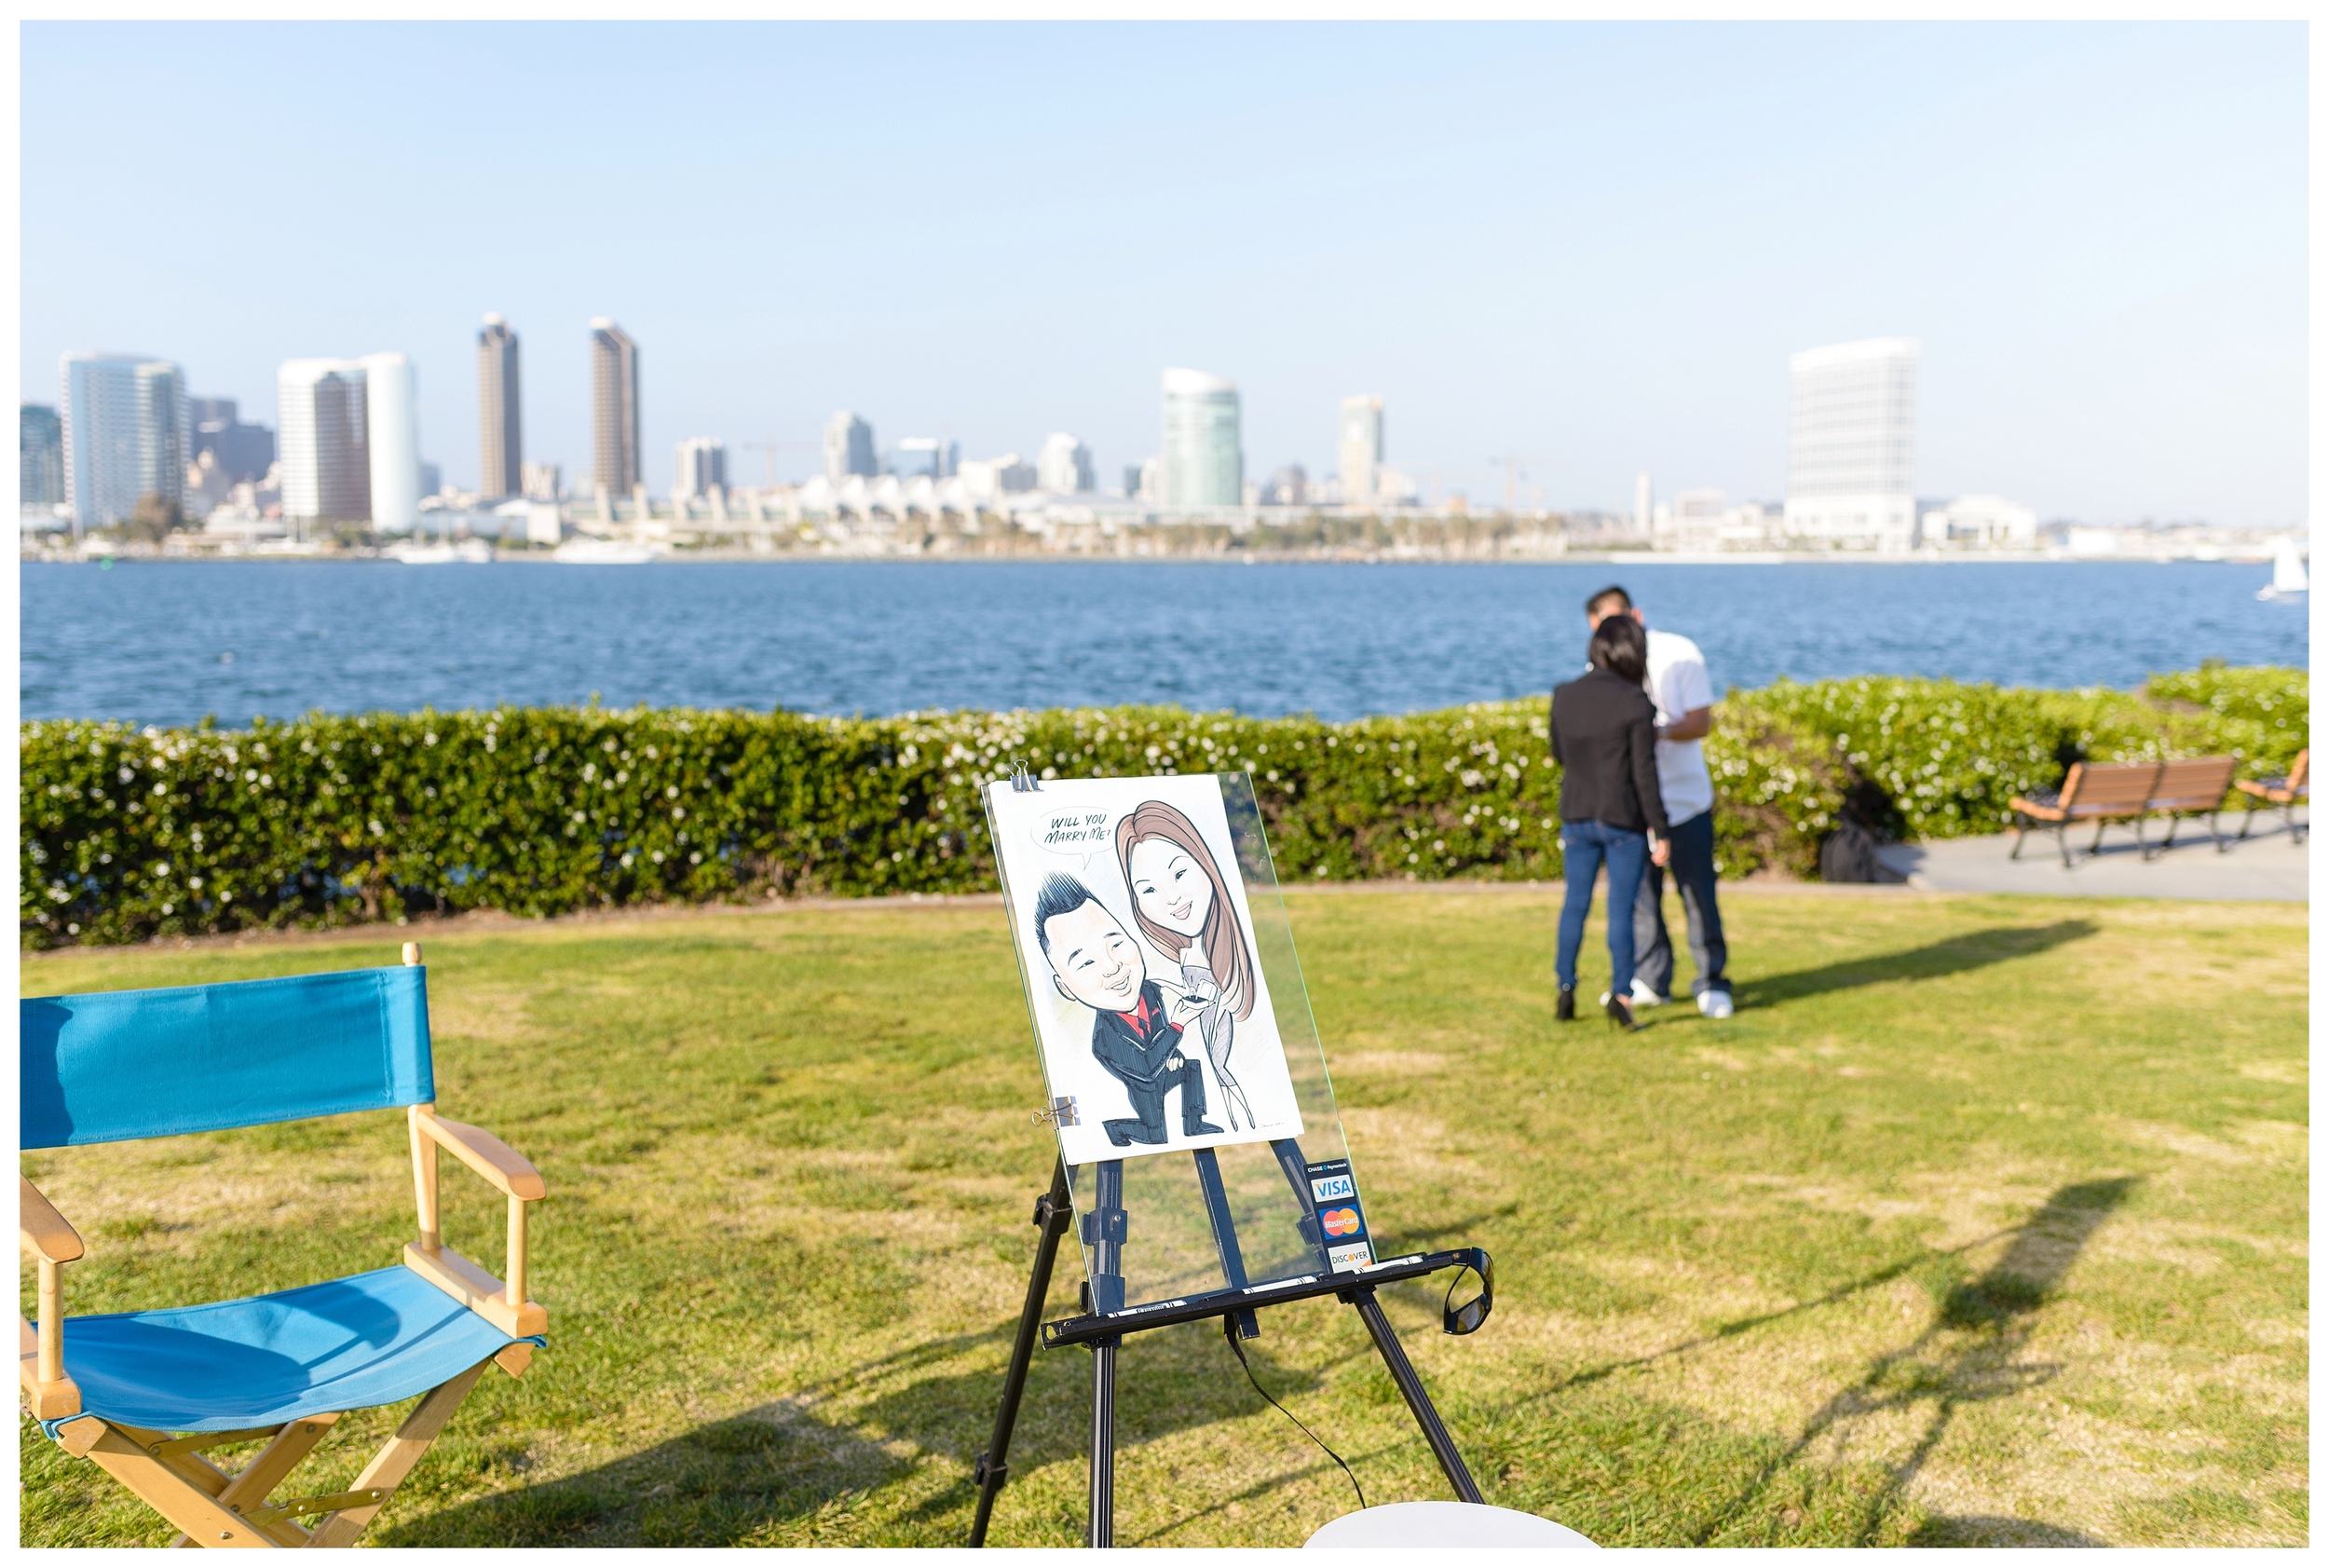 San Diego Proposal Photography | Ernie & Fiona Photography | Coronado Island | Centennial Park